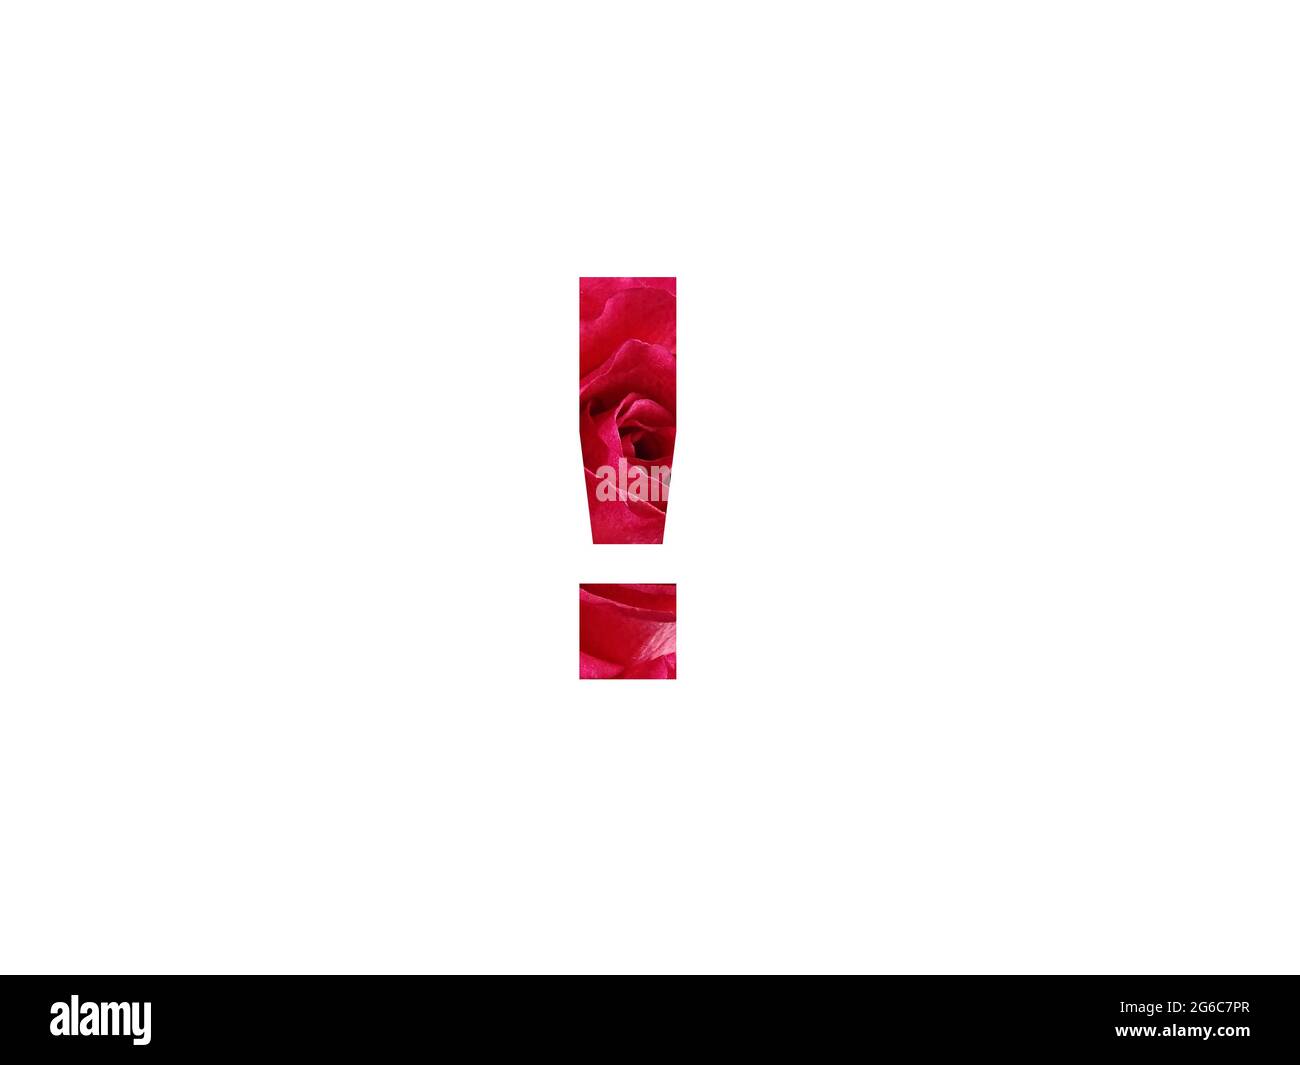 Point d'exclamation de l'alphabet fait avec une photo d'une rose rouge, isolée sur un fond blanc Banque D'Images